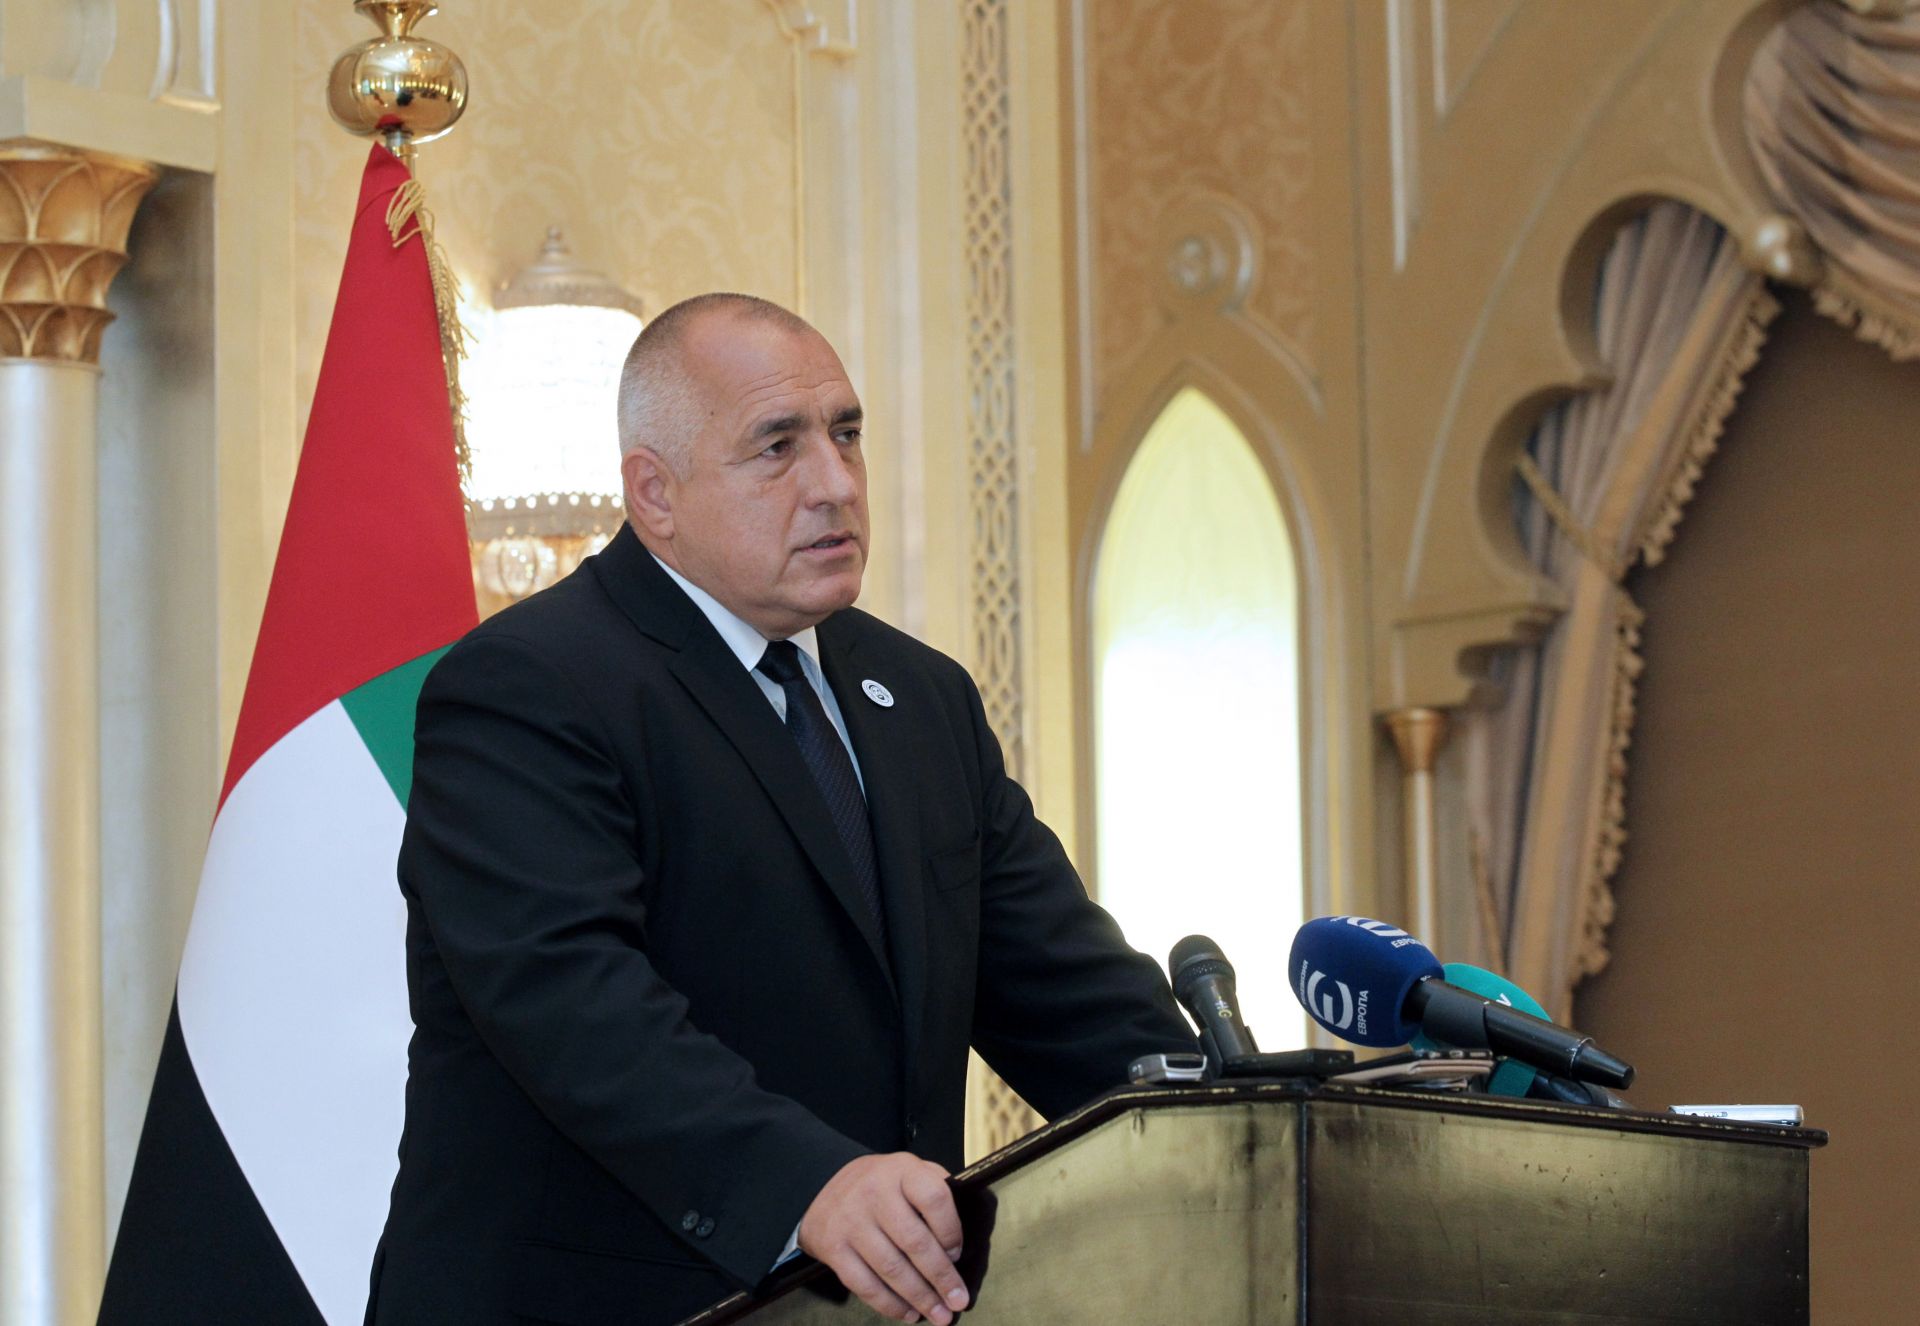 Обединените арабски емирства имат интереси да развиват връзките с България, както и за общи проекти в страните от Западните Балкани, заяви премиерът Бойко Борисов